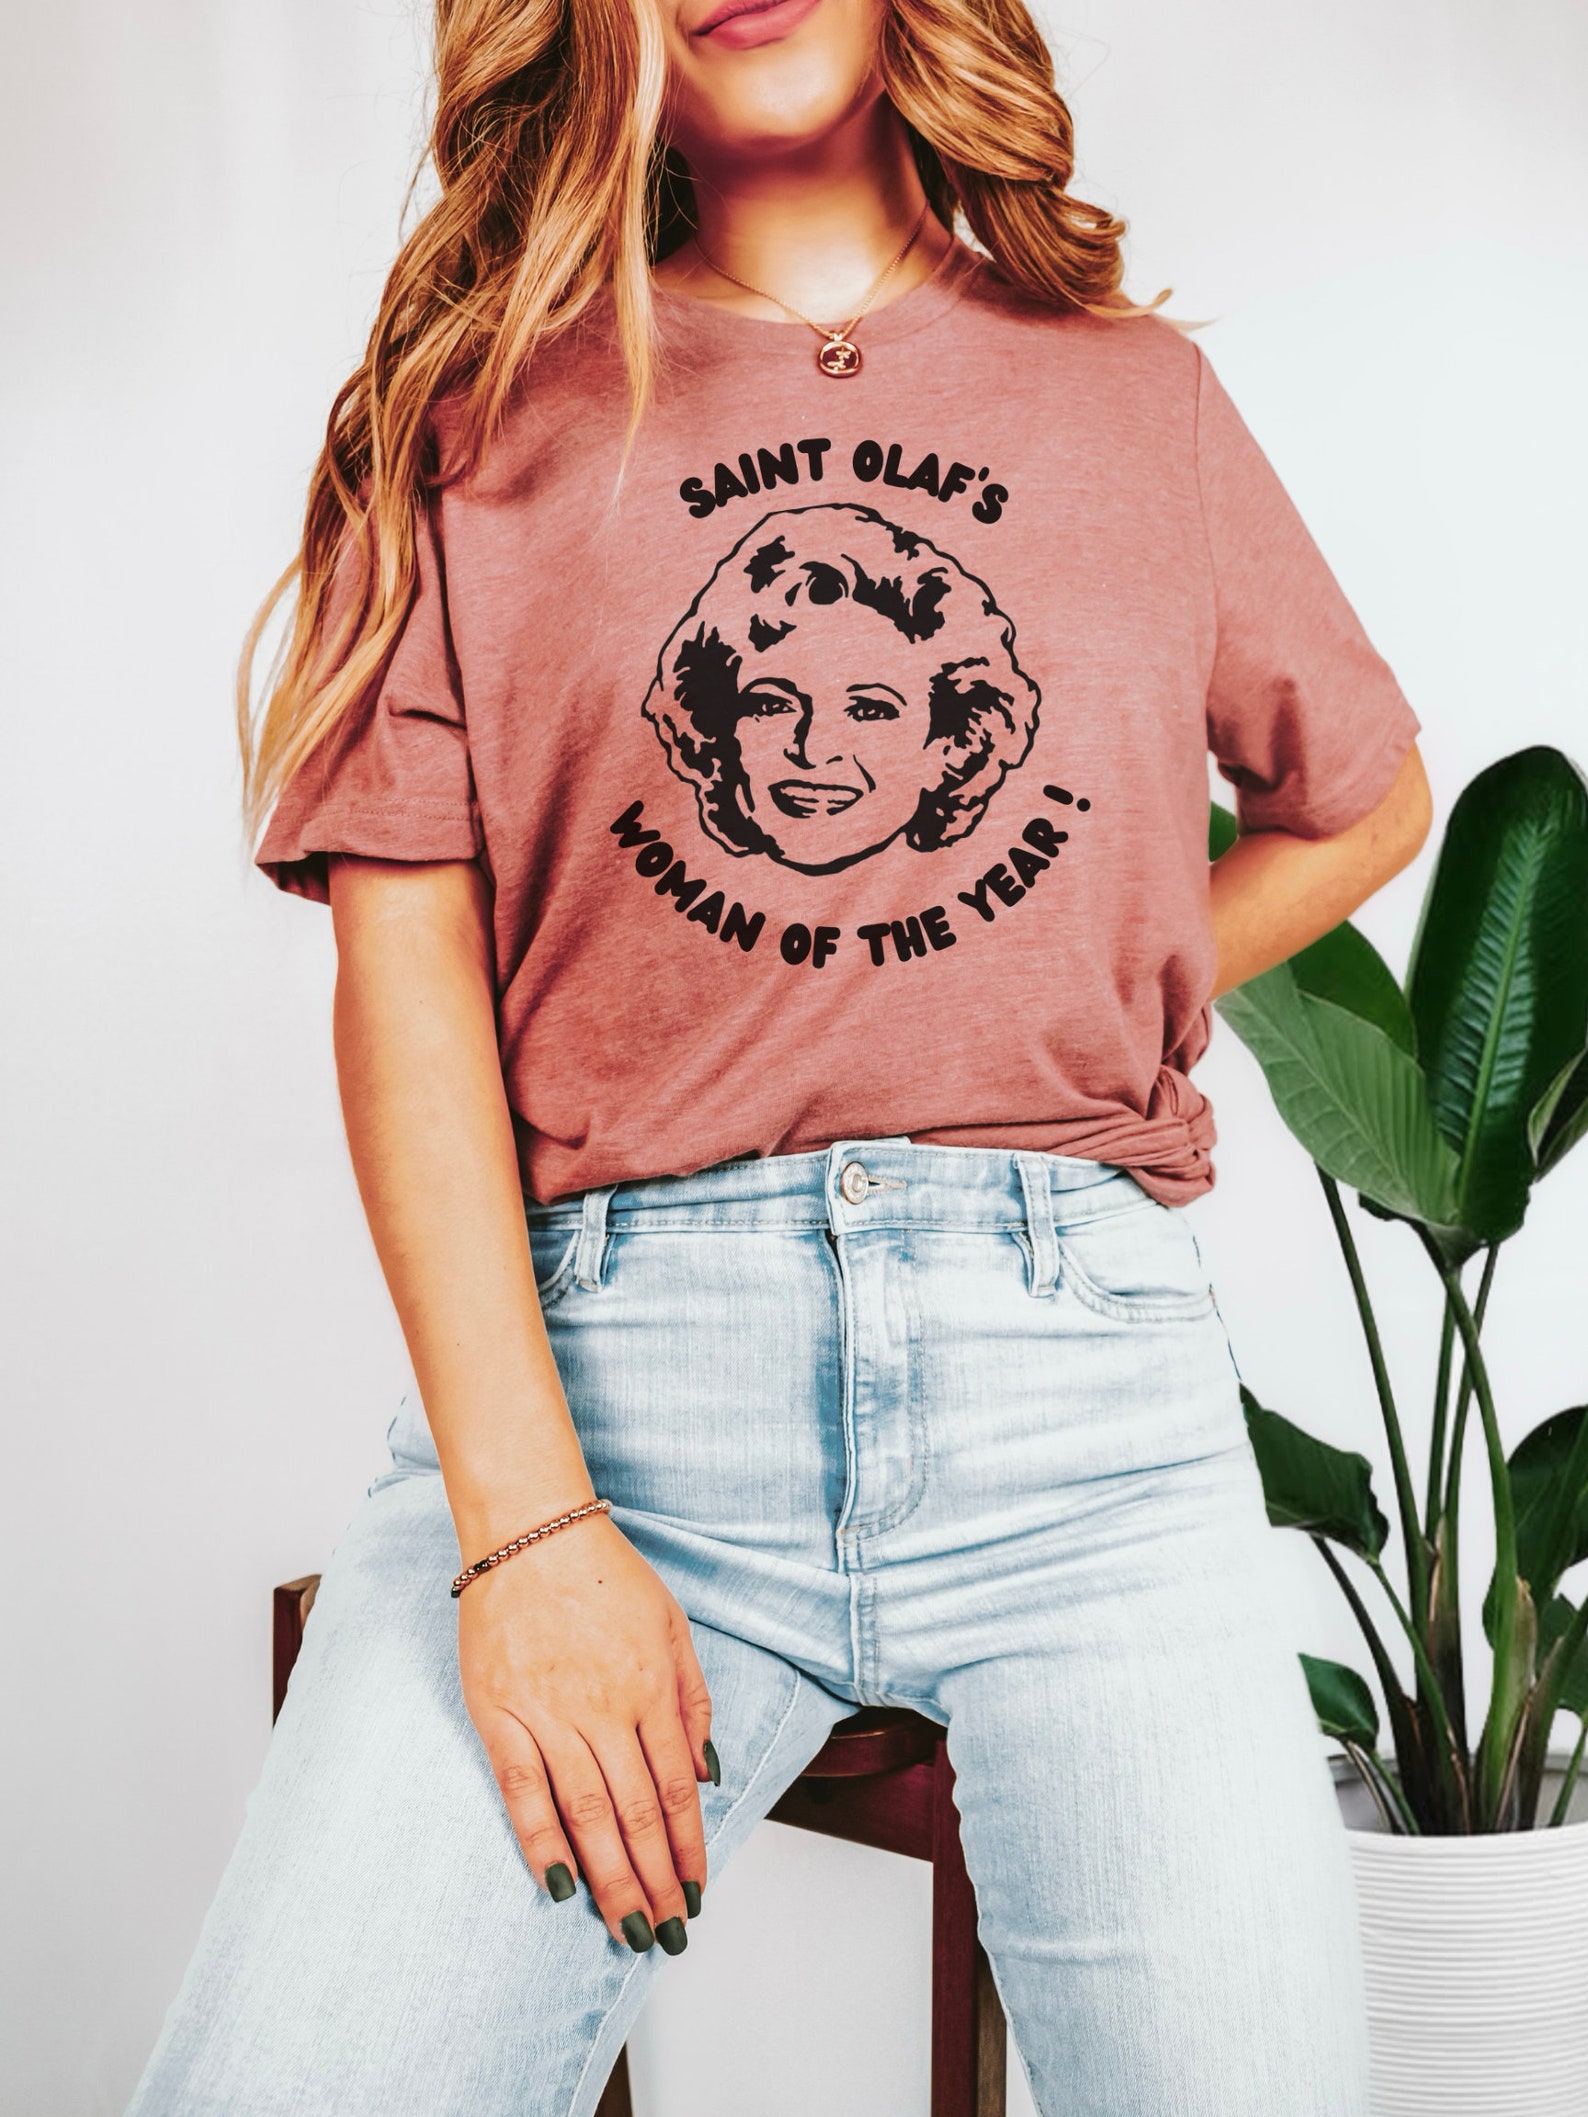 Golden Girls Shirt. Betty White Fan. Golden Girls T-shirt. - Etsy